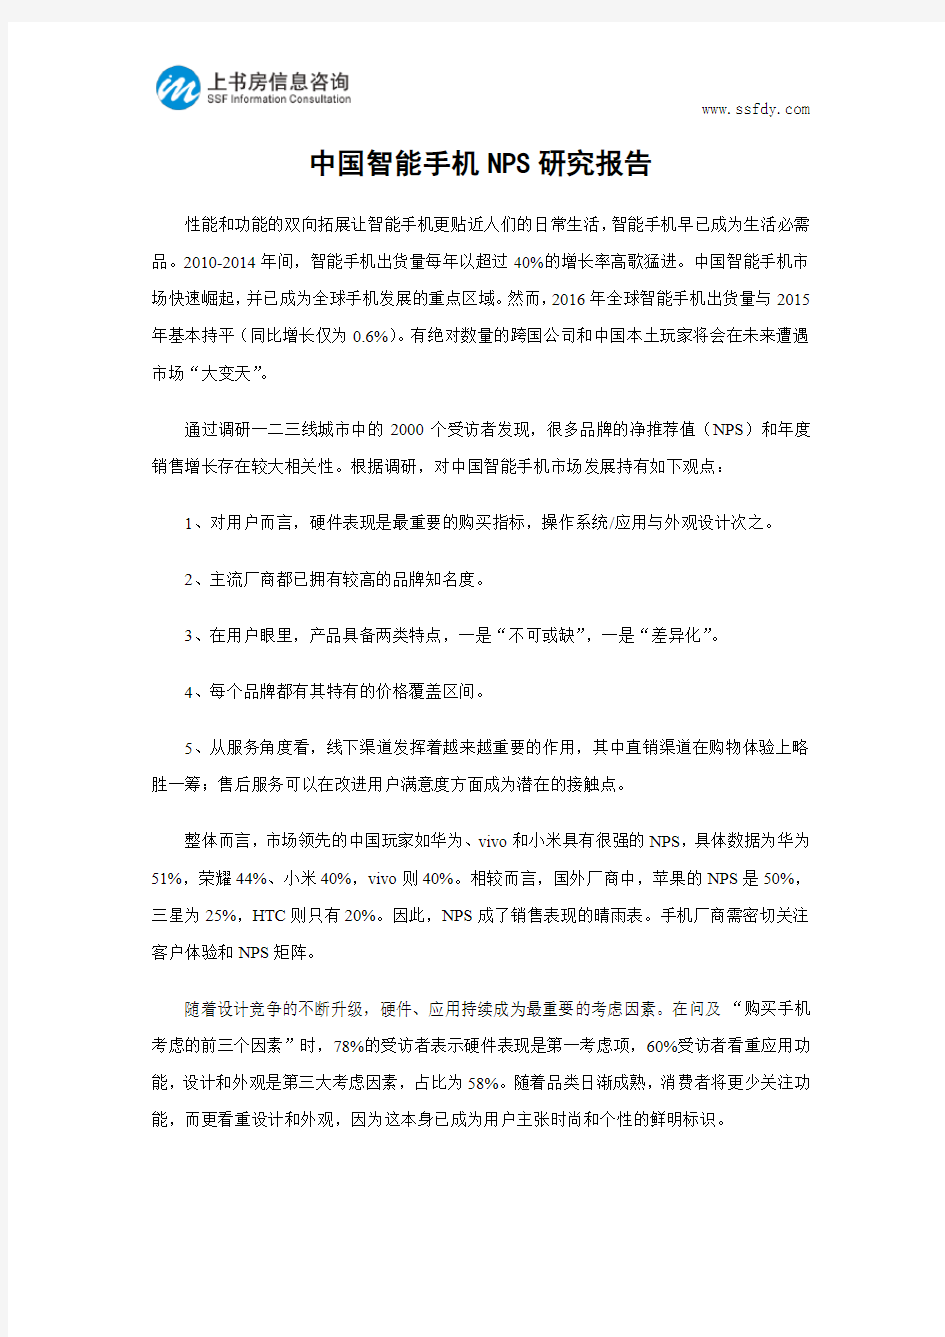 中国智能手机NPS研究报告-上书房信息咨询